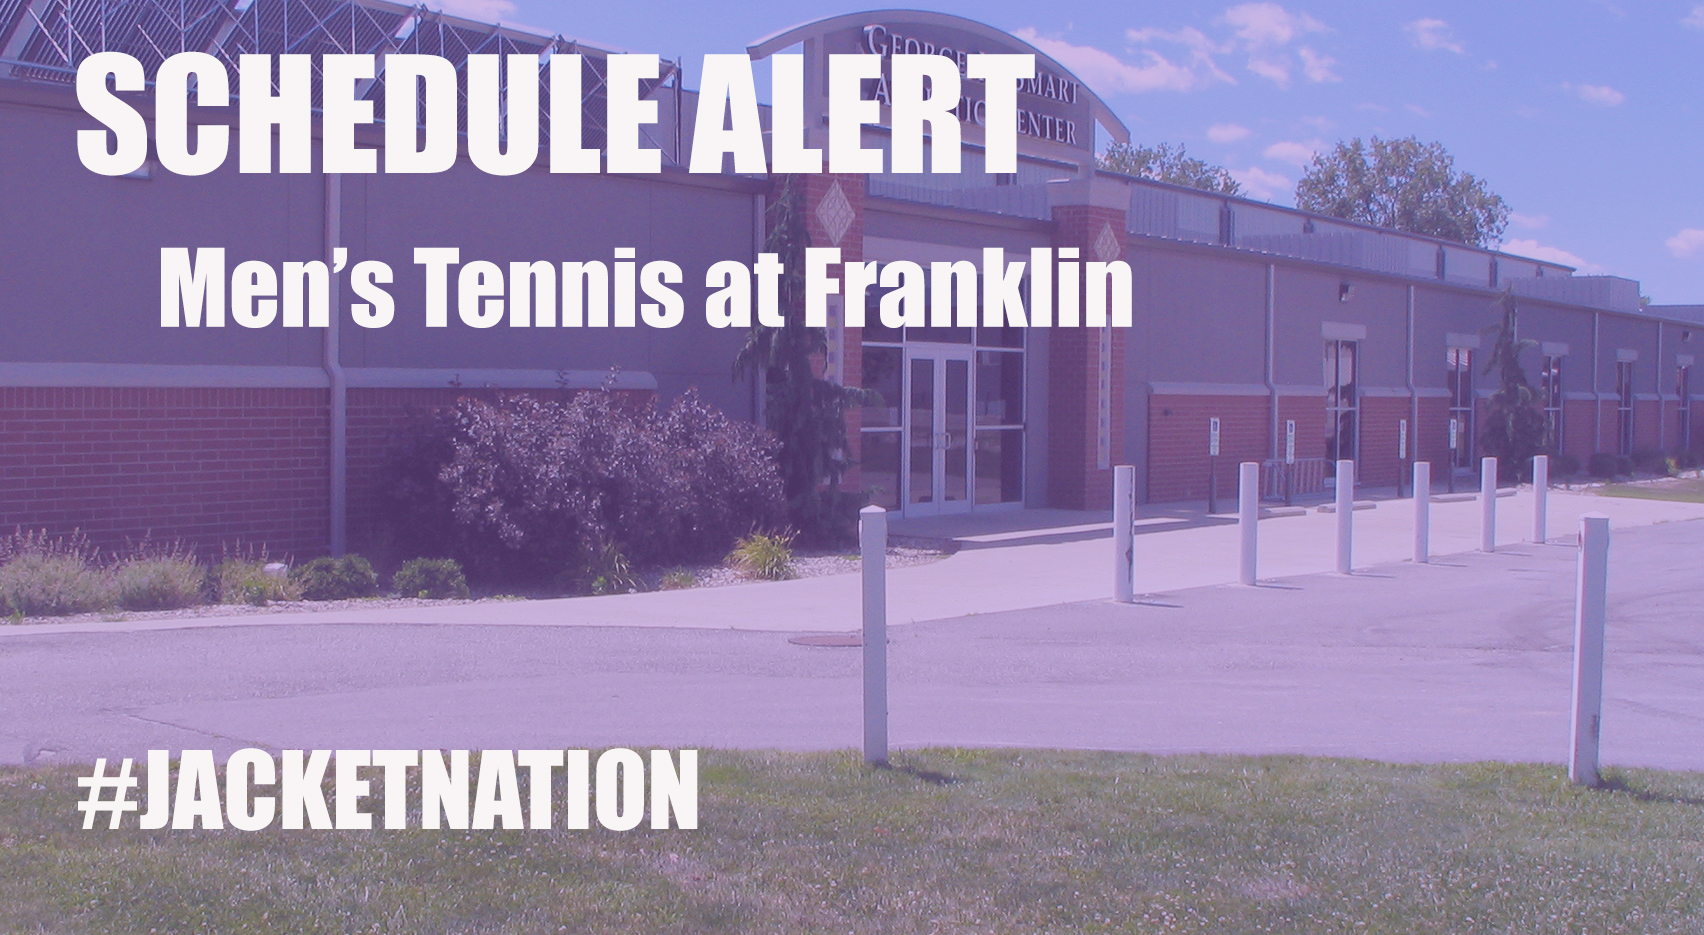 Men's Tennis Match at Franklin Rescheduled